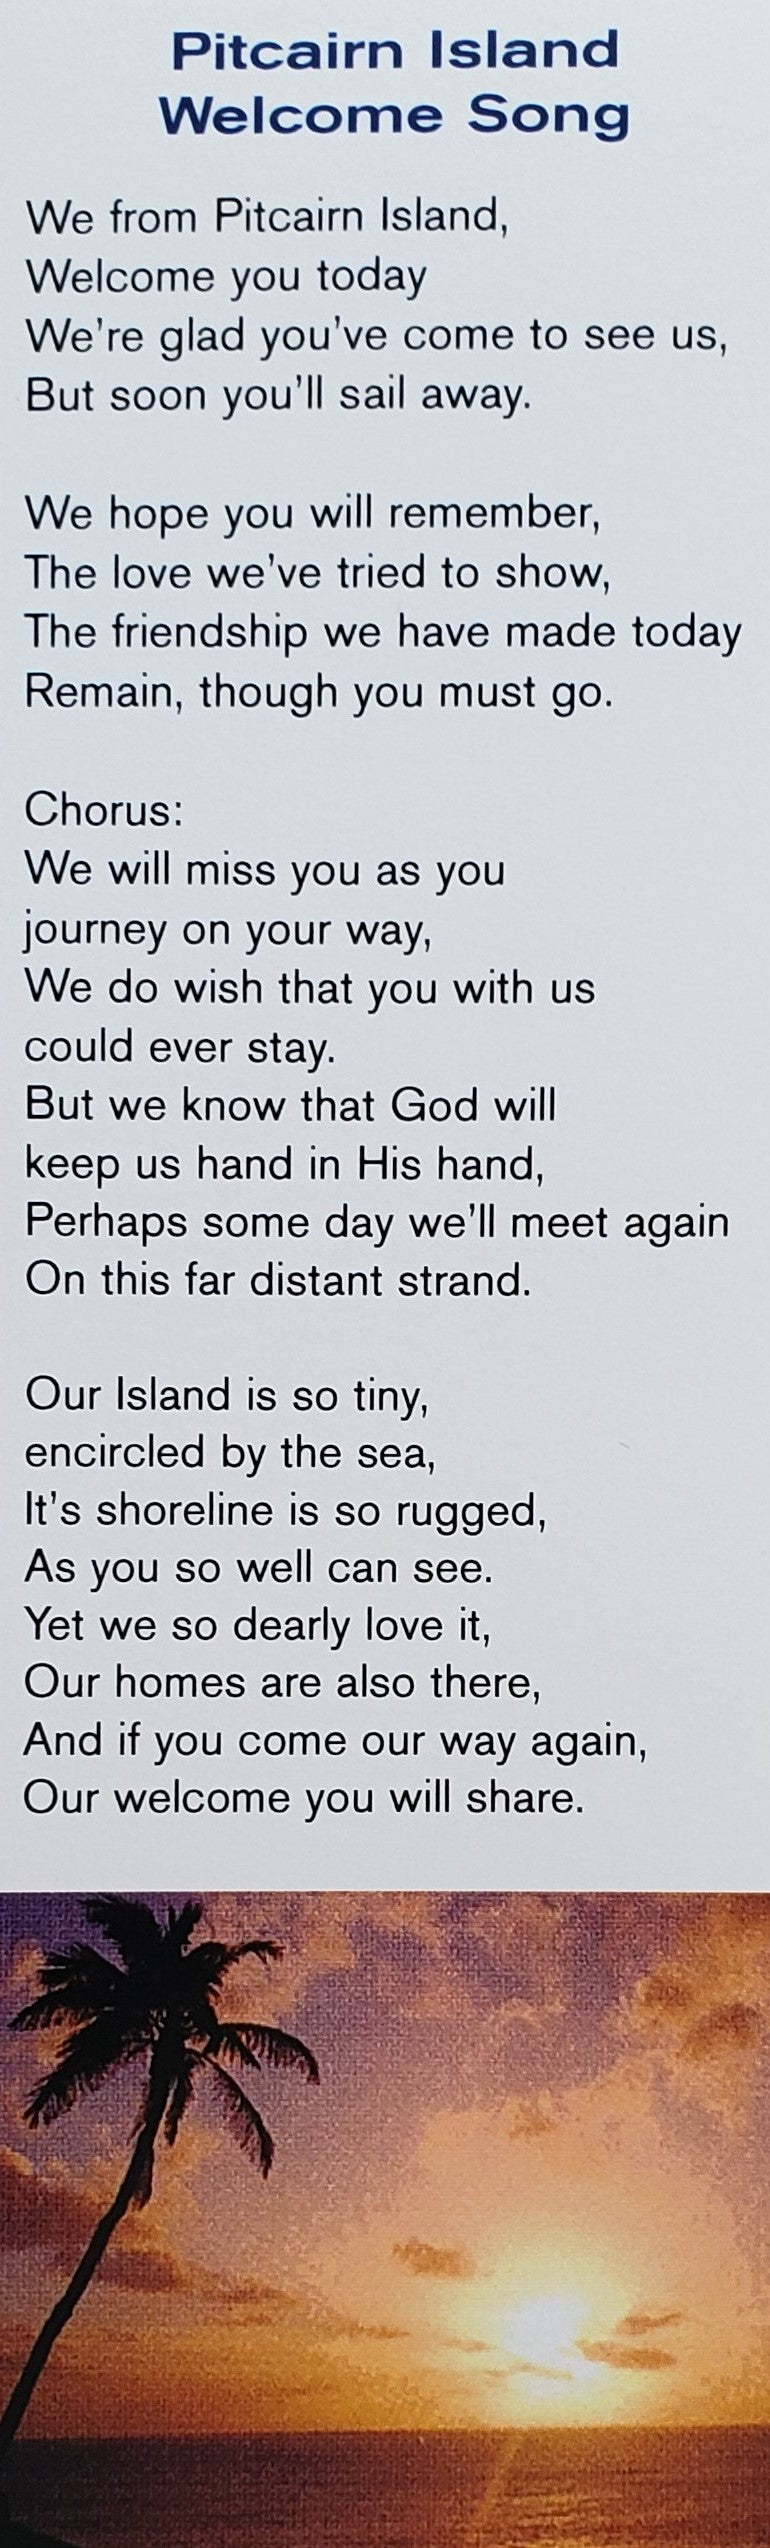 Lesezeichen - Pitcairn Island Welcome Song - Kartenvorrat